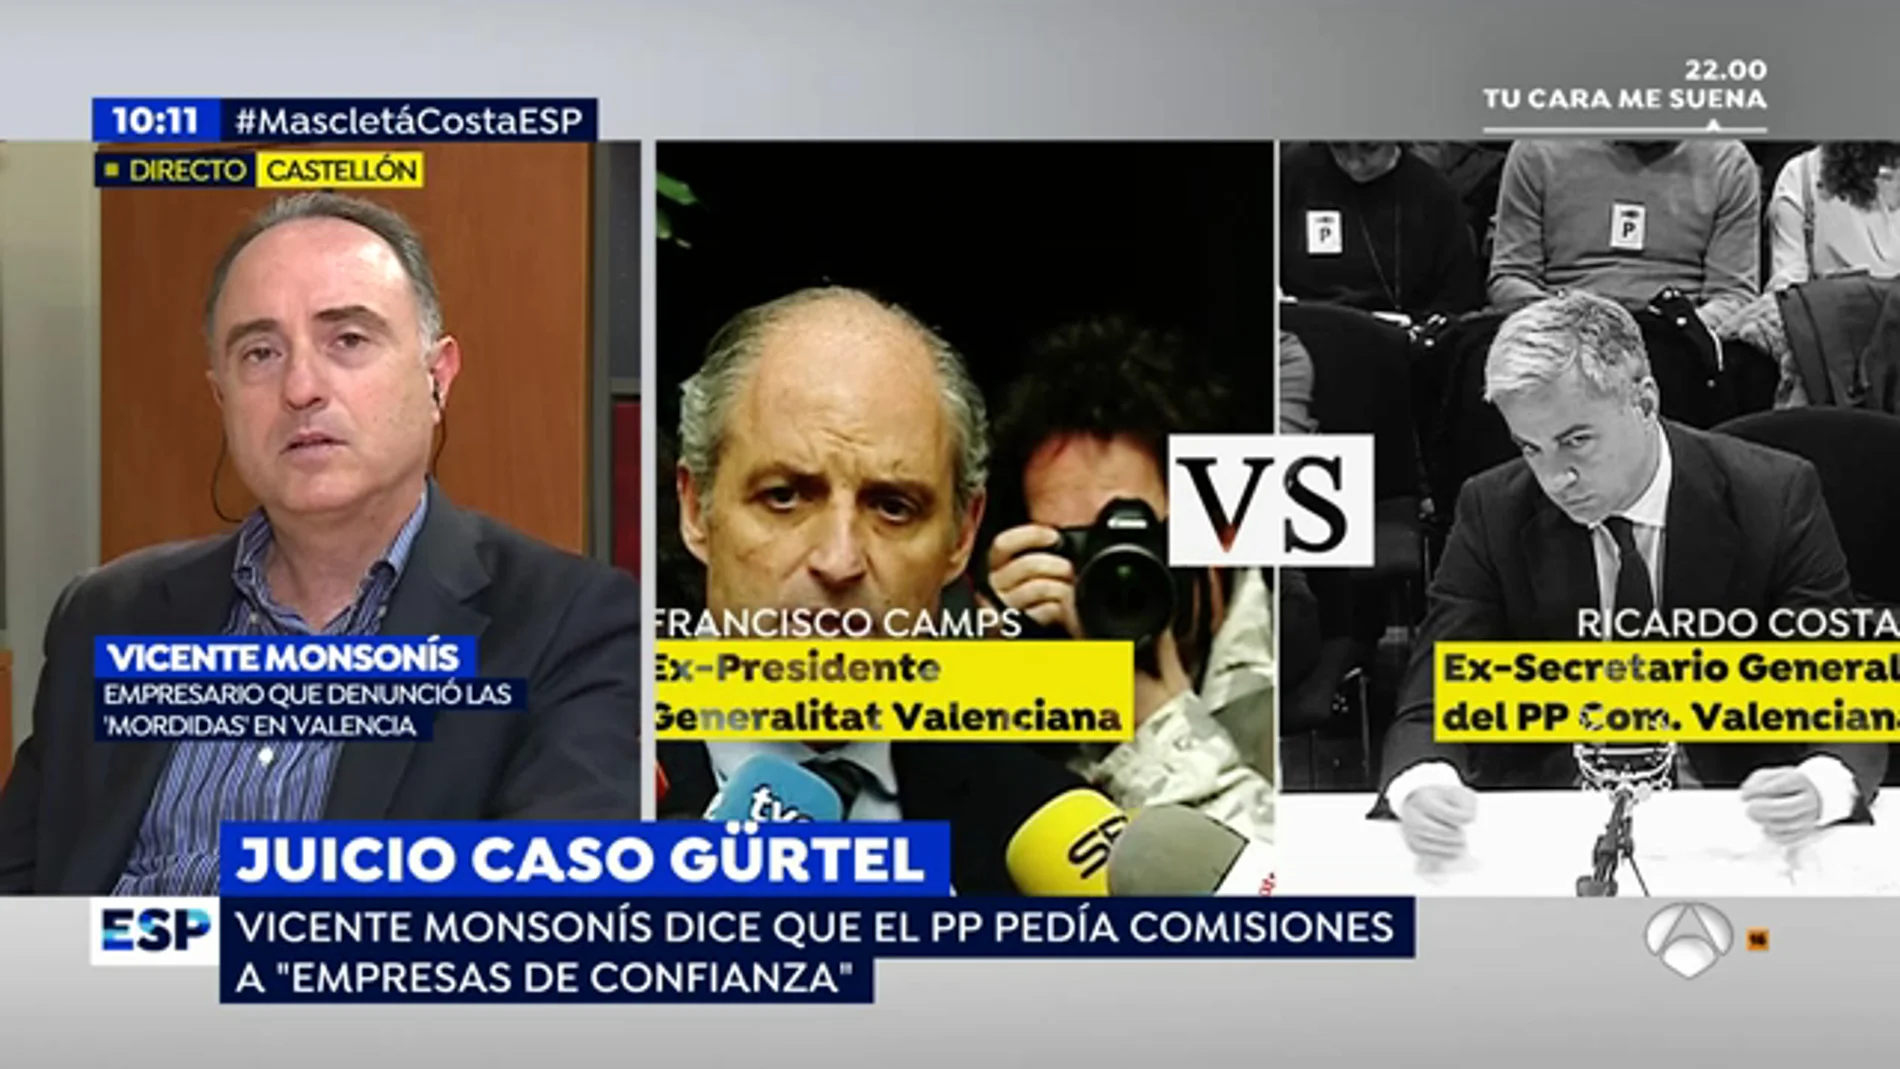  El empresario Vicente Monsonís, sobre el caso Gürtel: "el PP pedía comisiones a 'empresas de confianza'"